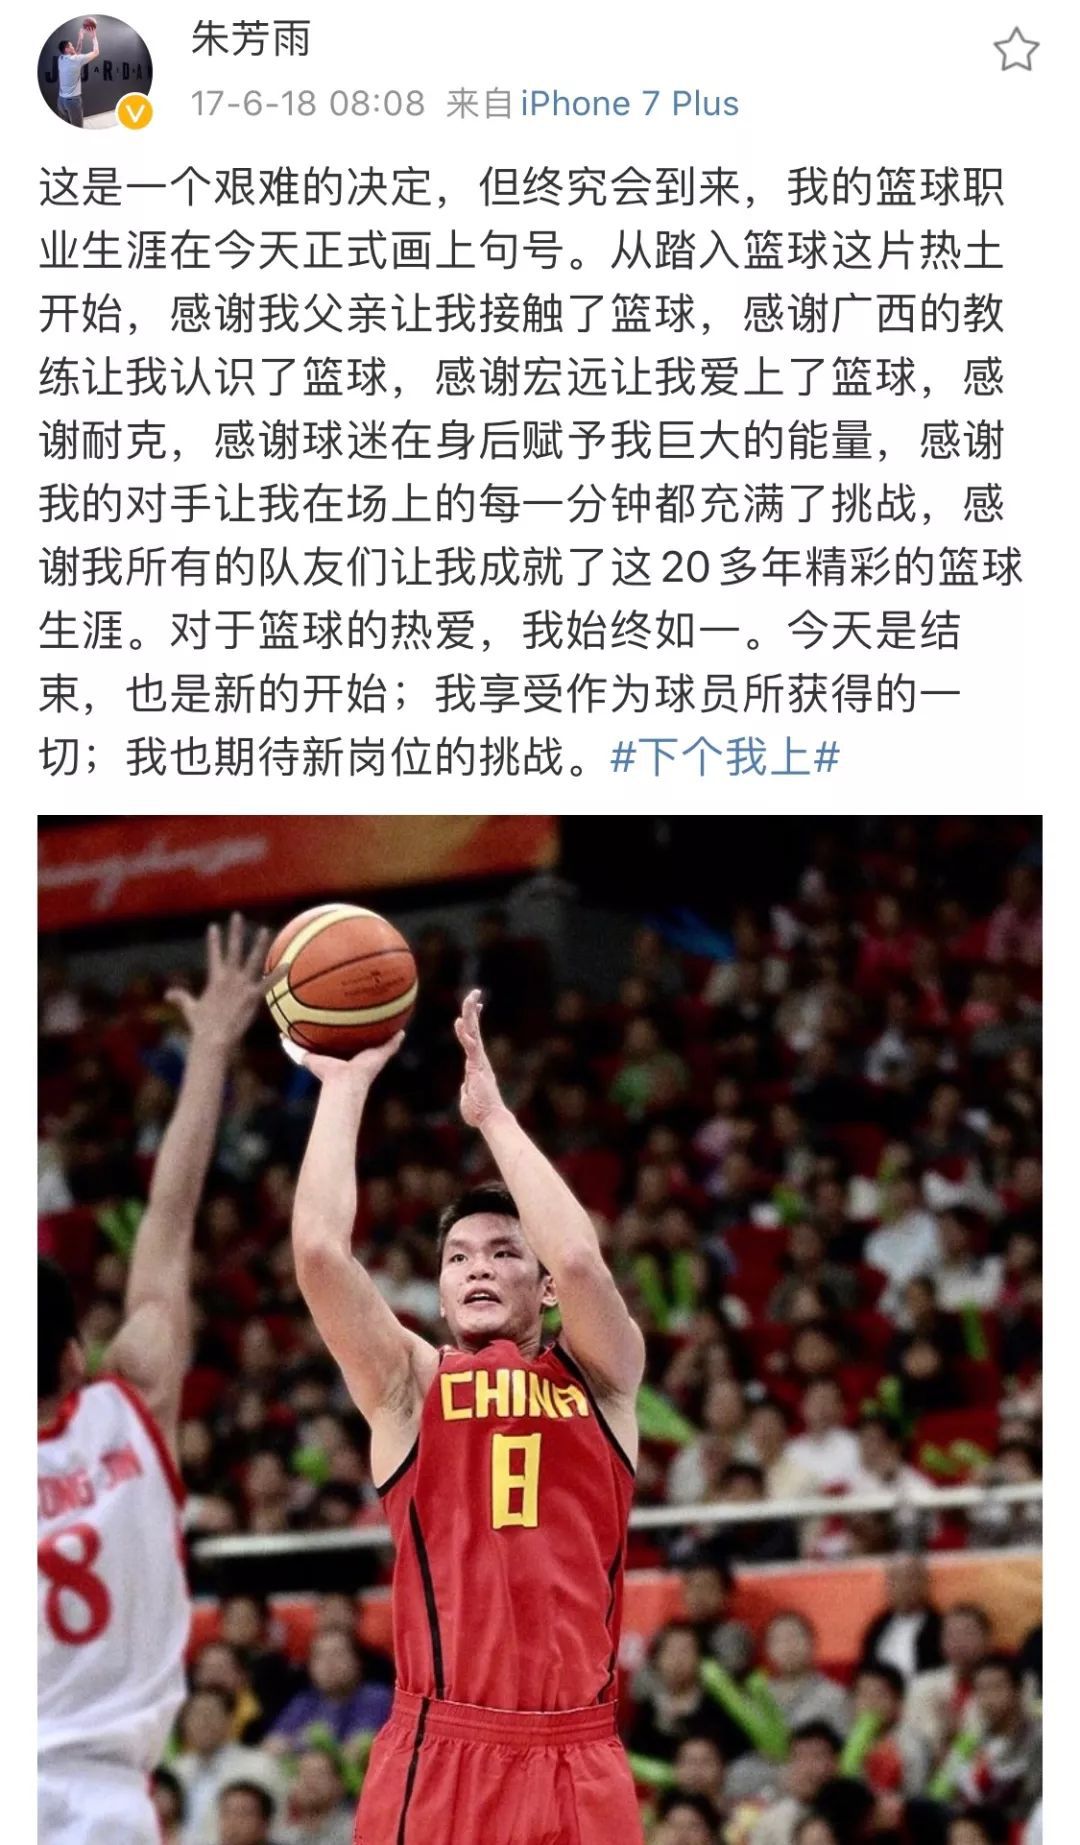 退役后的朱芳雨,在微博上发了一段文字,从文字看来,对于"离开球场但